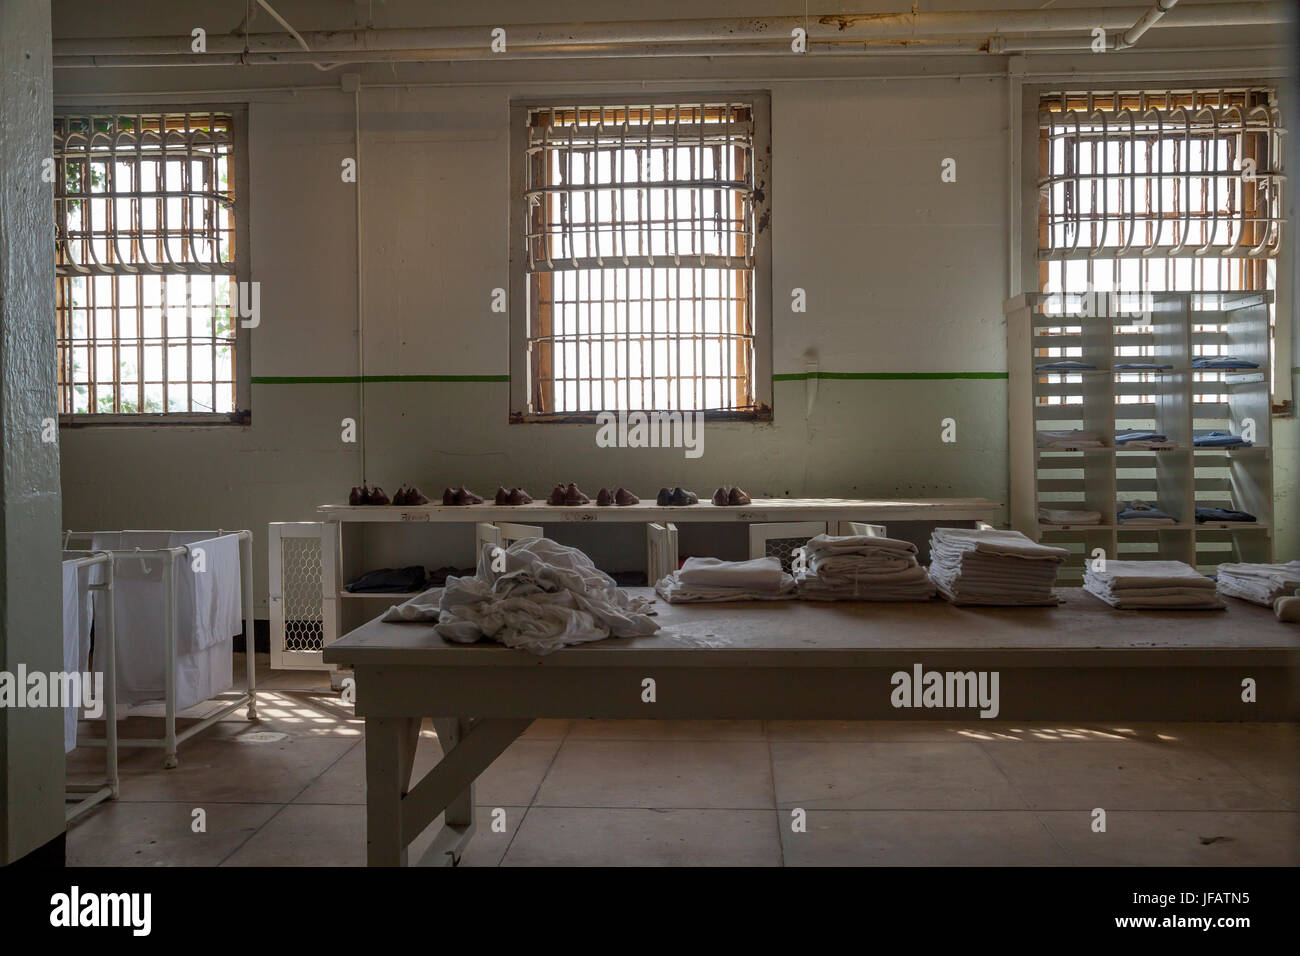 Laundry room in Alcatraz penitentiary, San Francisco, California, USA Stock Photo